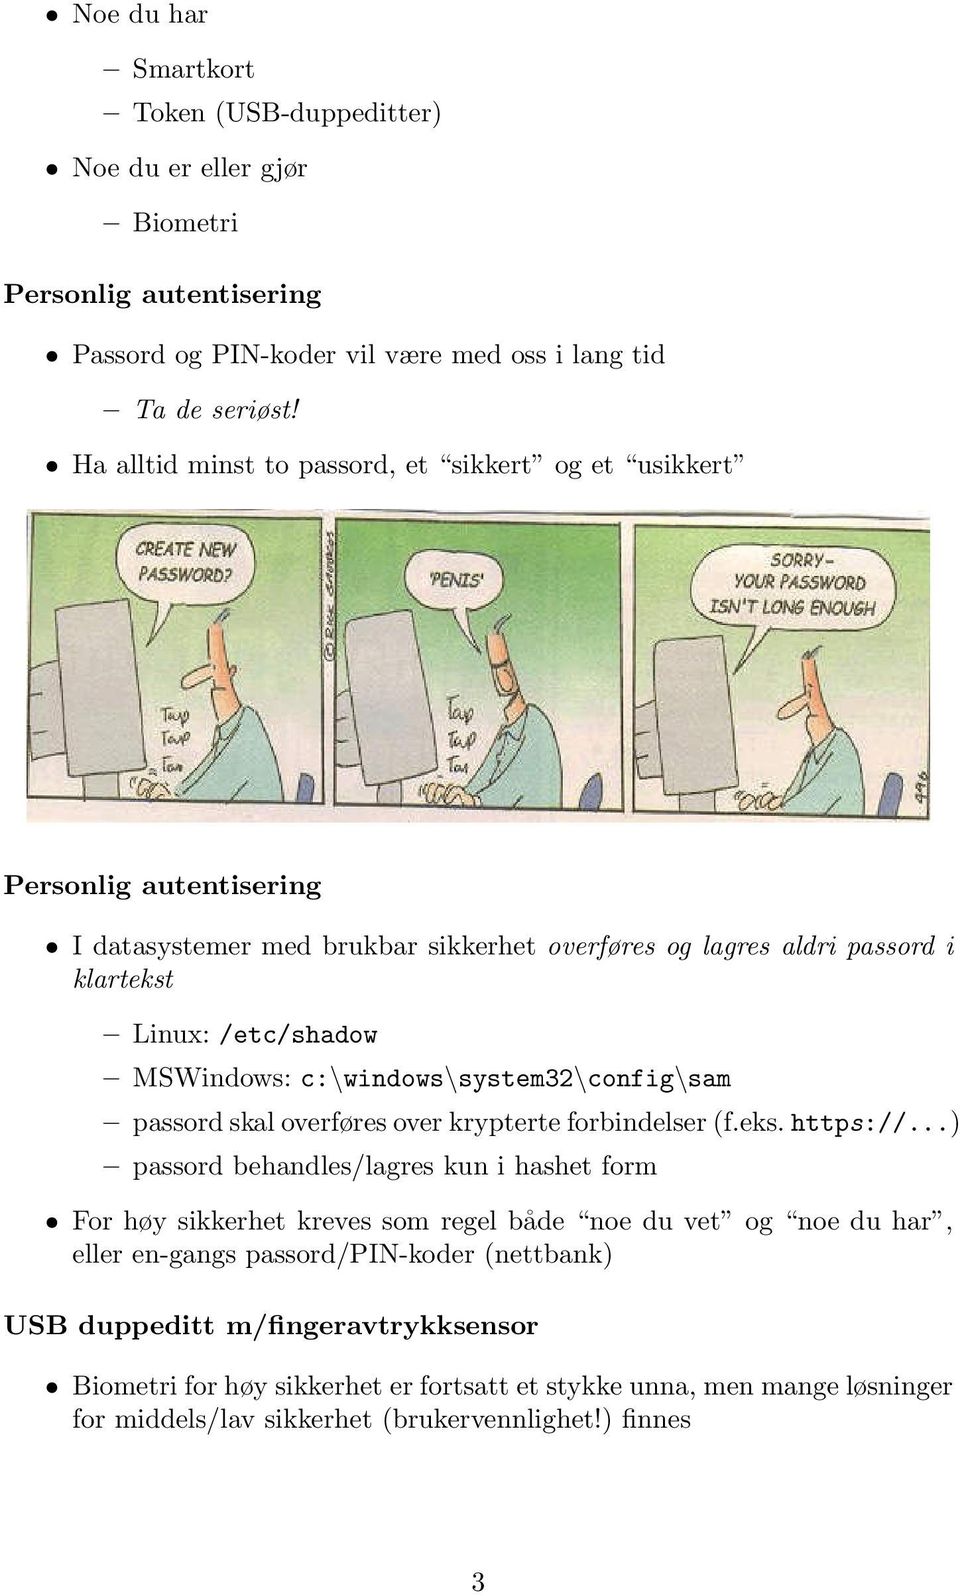 c:\windows\system32\config\sam passord skal overføres over krypterte forbindelser (f.eks. https://.